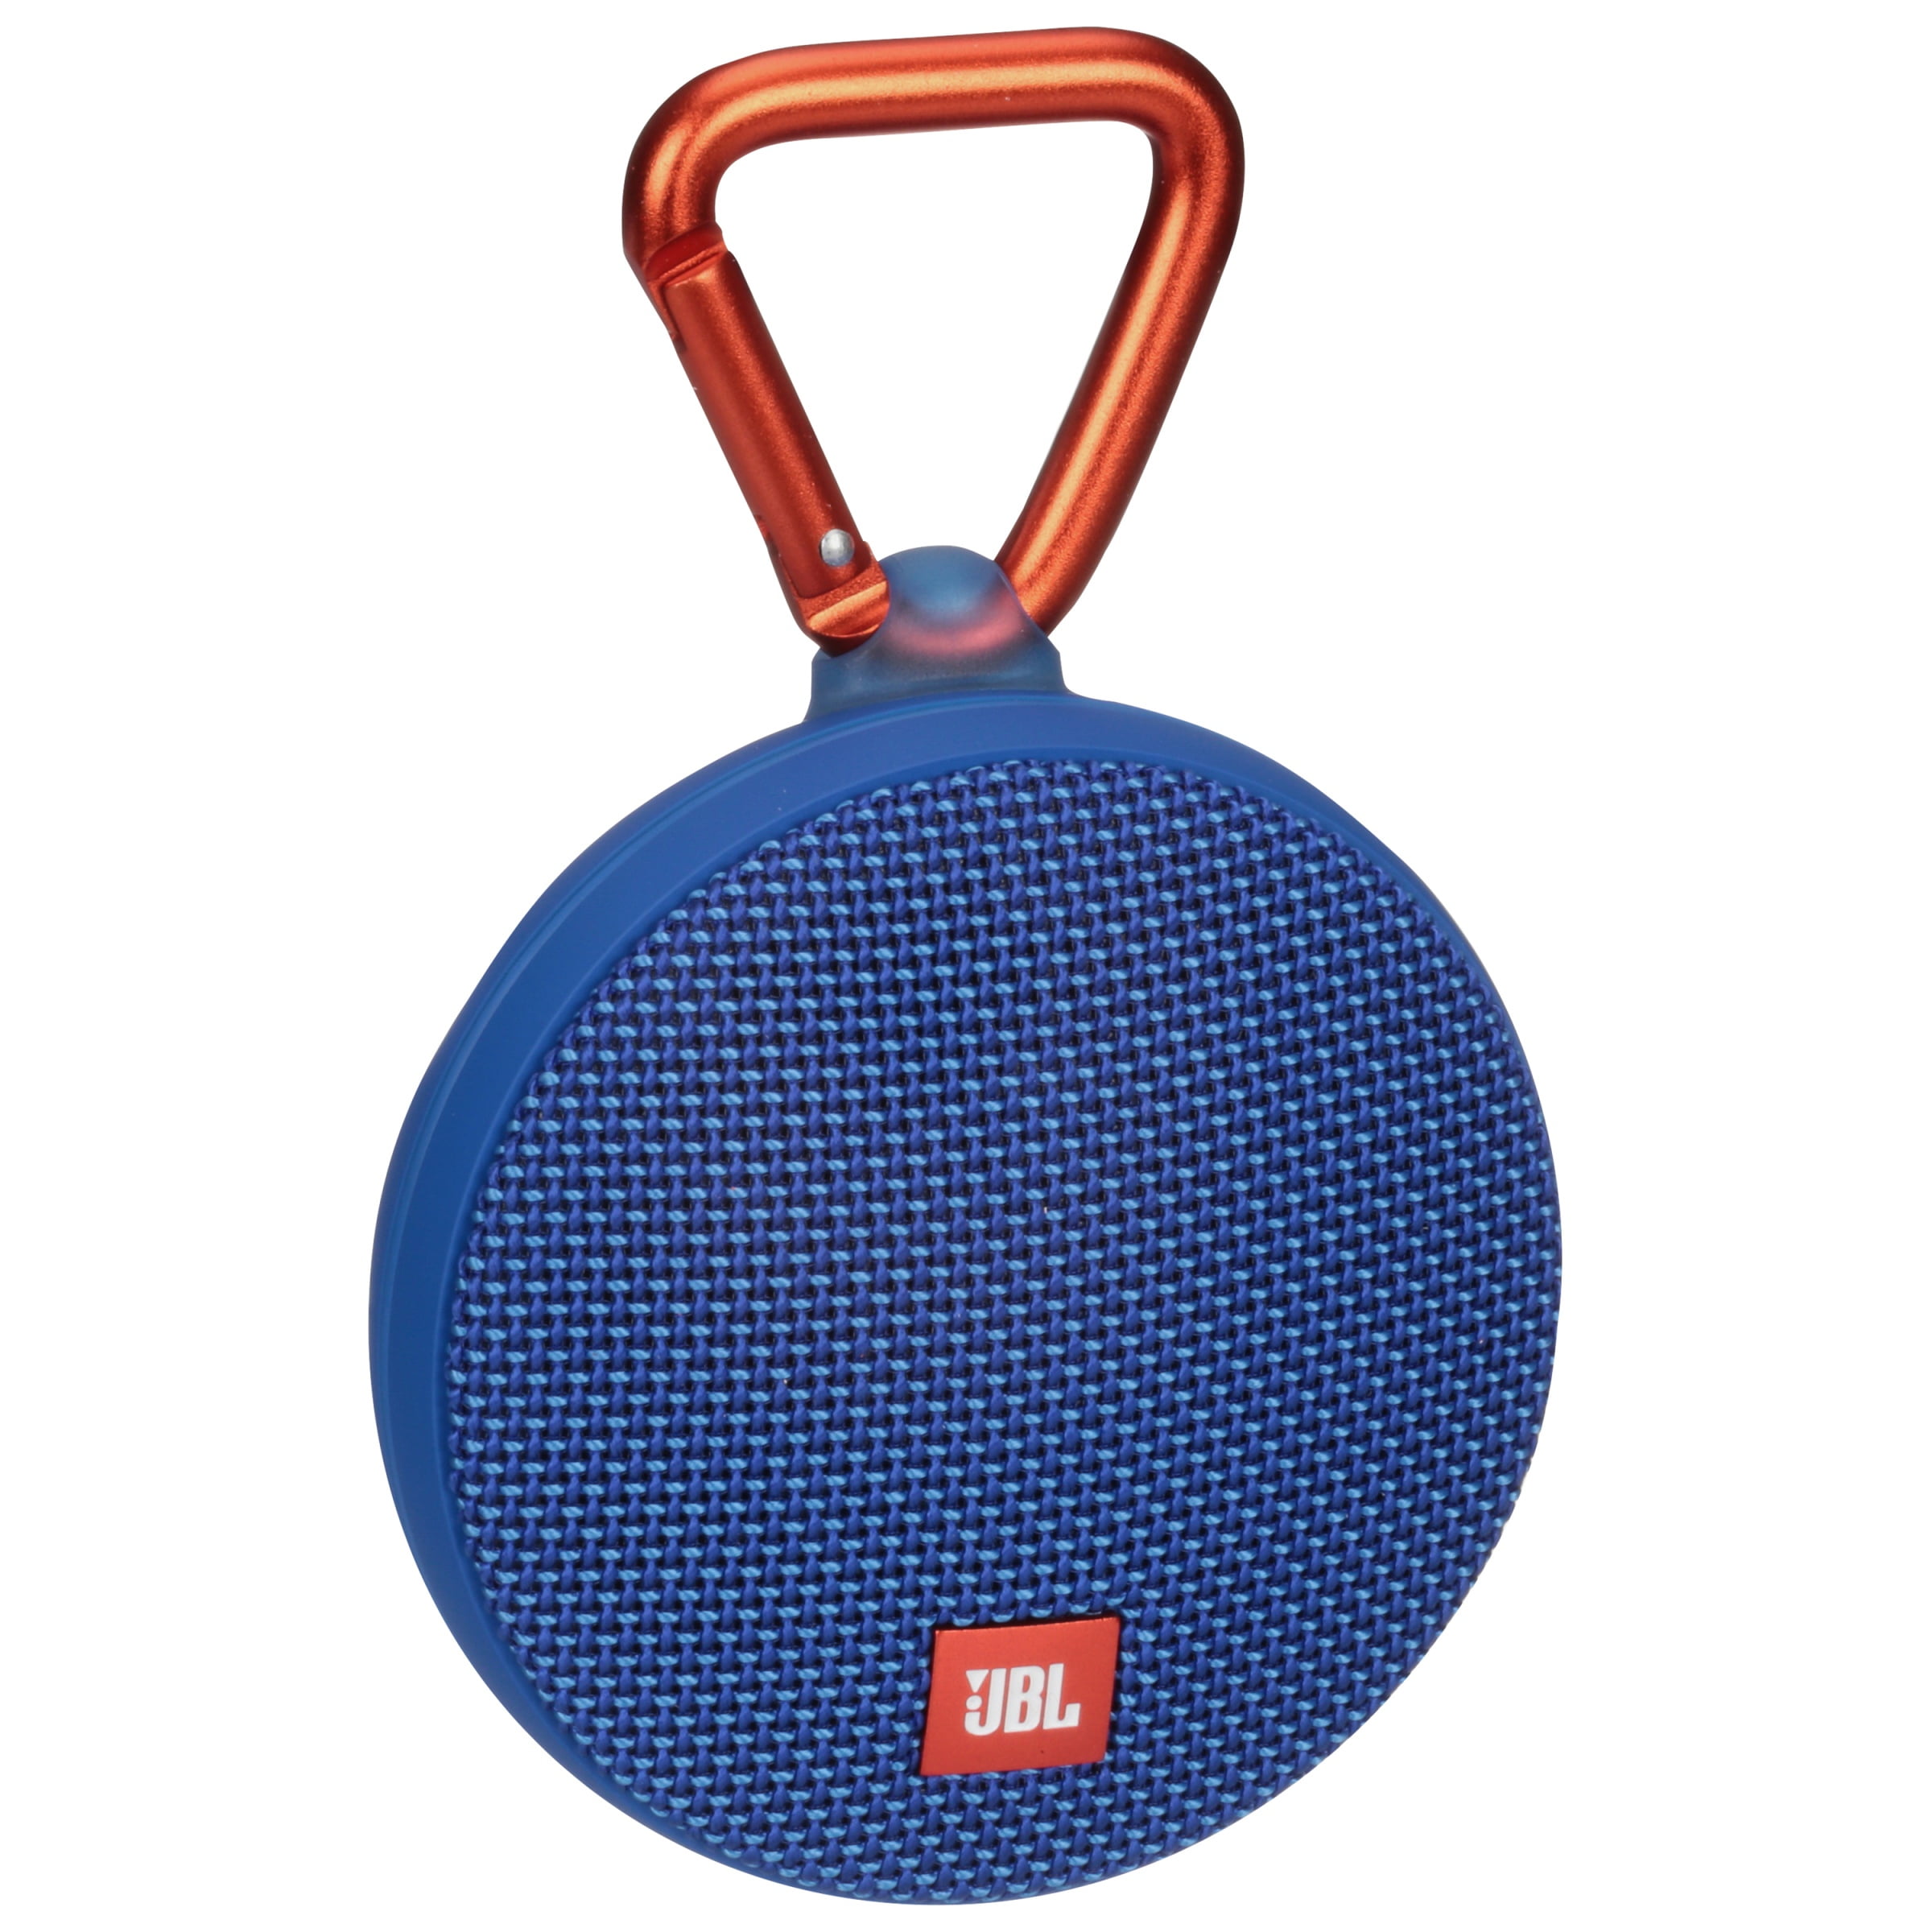 JBL CLIP 2 IPX7 Waterproof Portable Bluetooth Wireless Speaker 